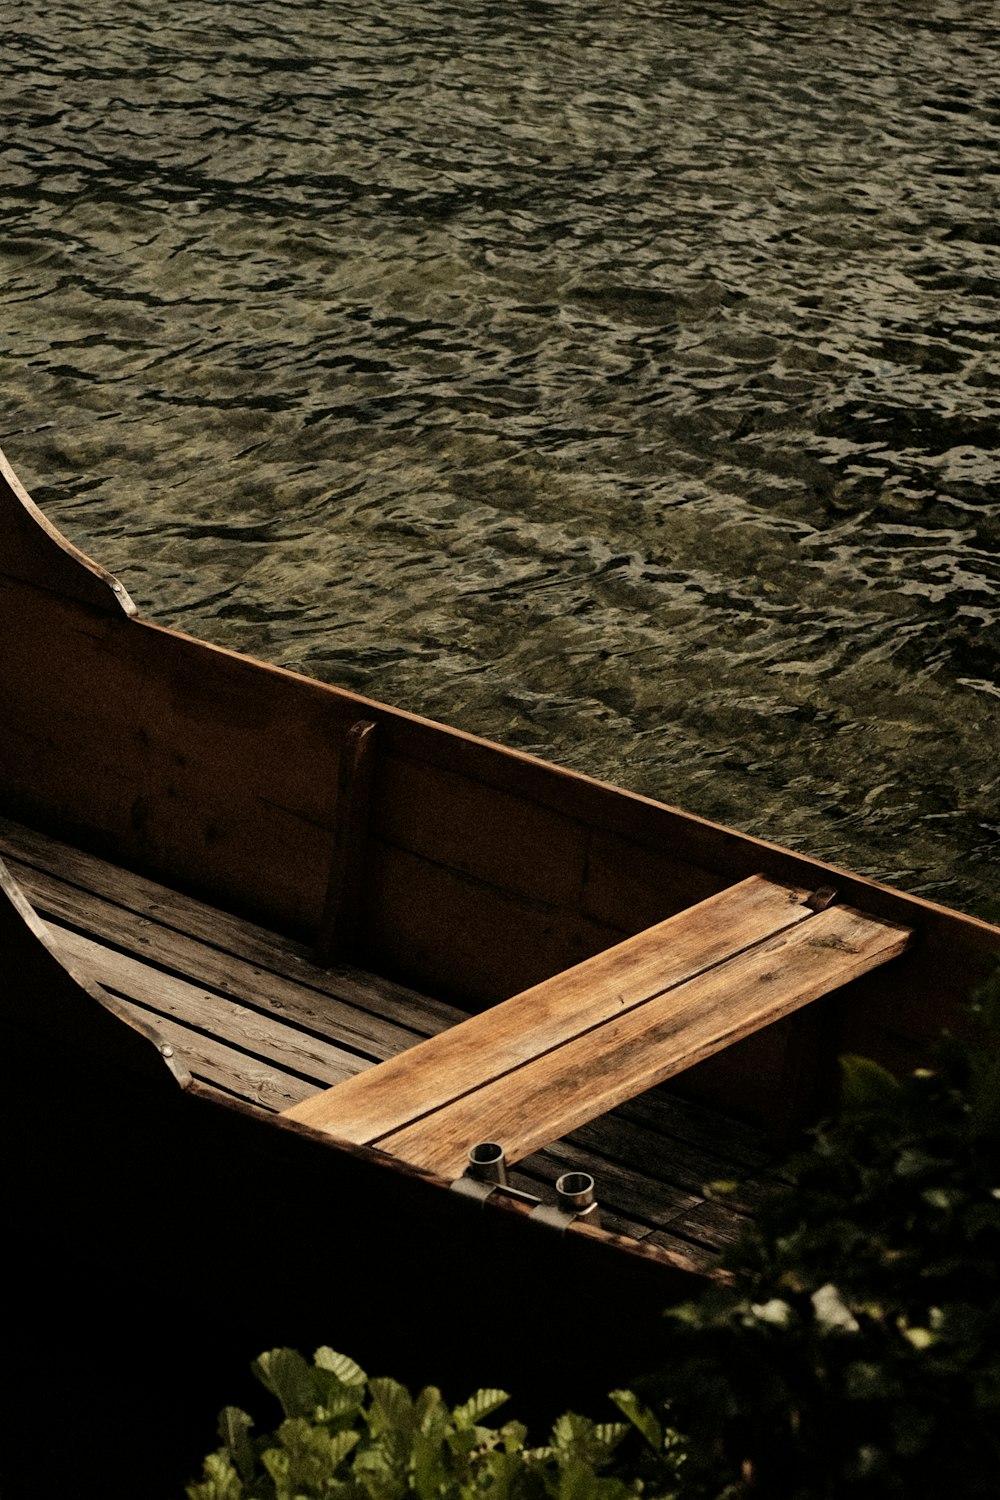 un petit bateau en bois flottant au-dessus d’un plan d’eau